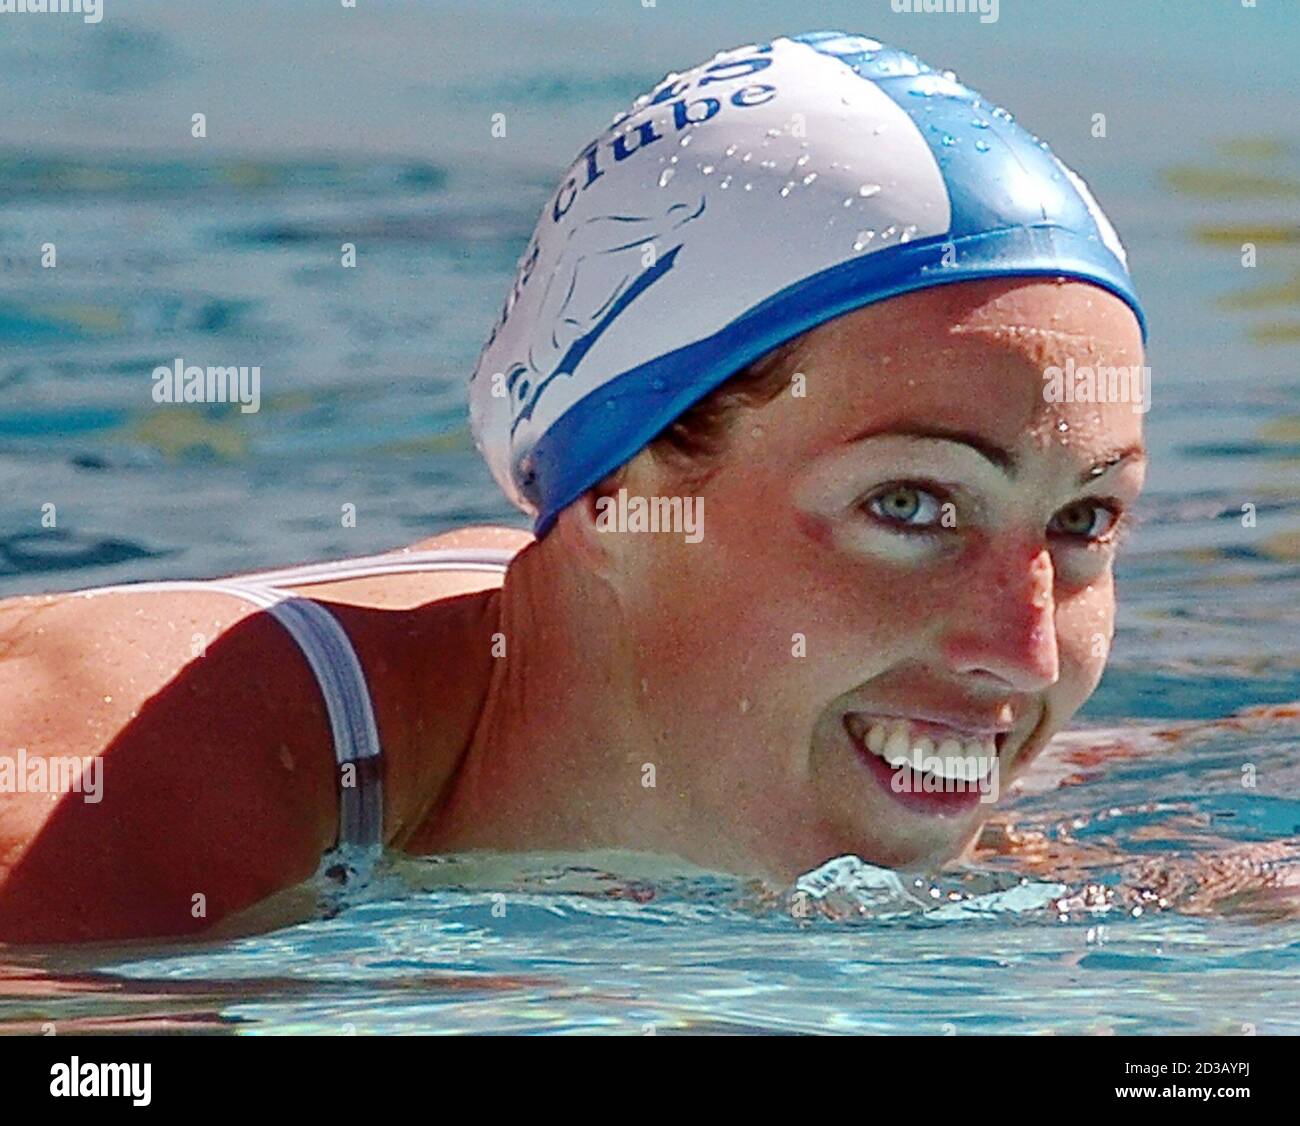 Swedish Swimmer Therese Alshammar After Stockfotos Und Bilder Kaufen Alamy